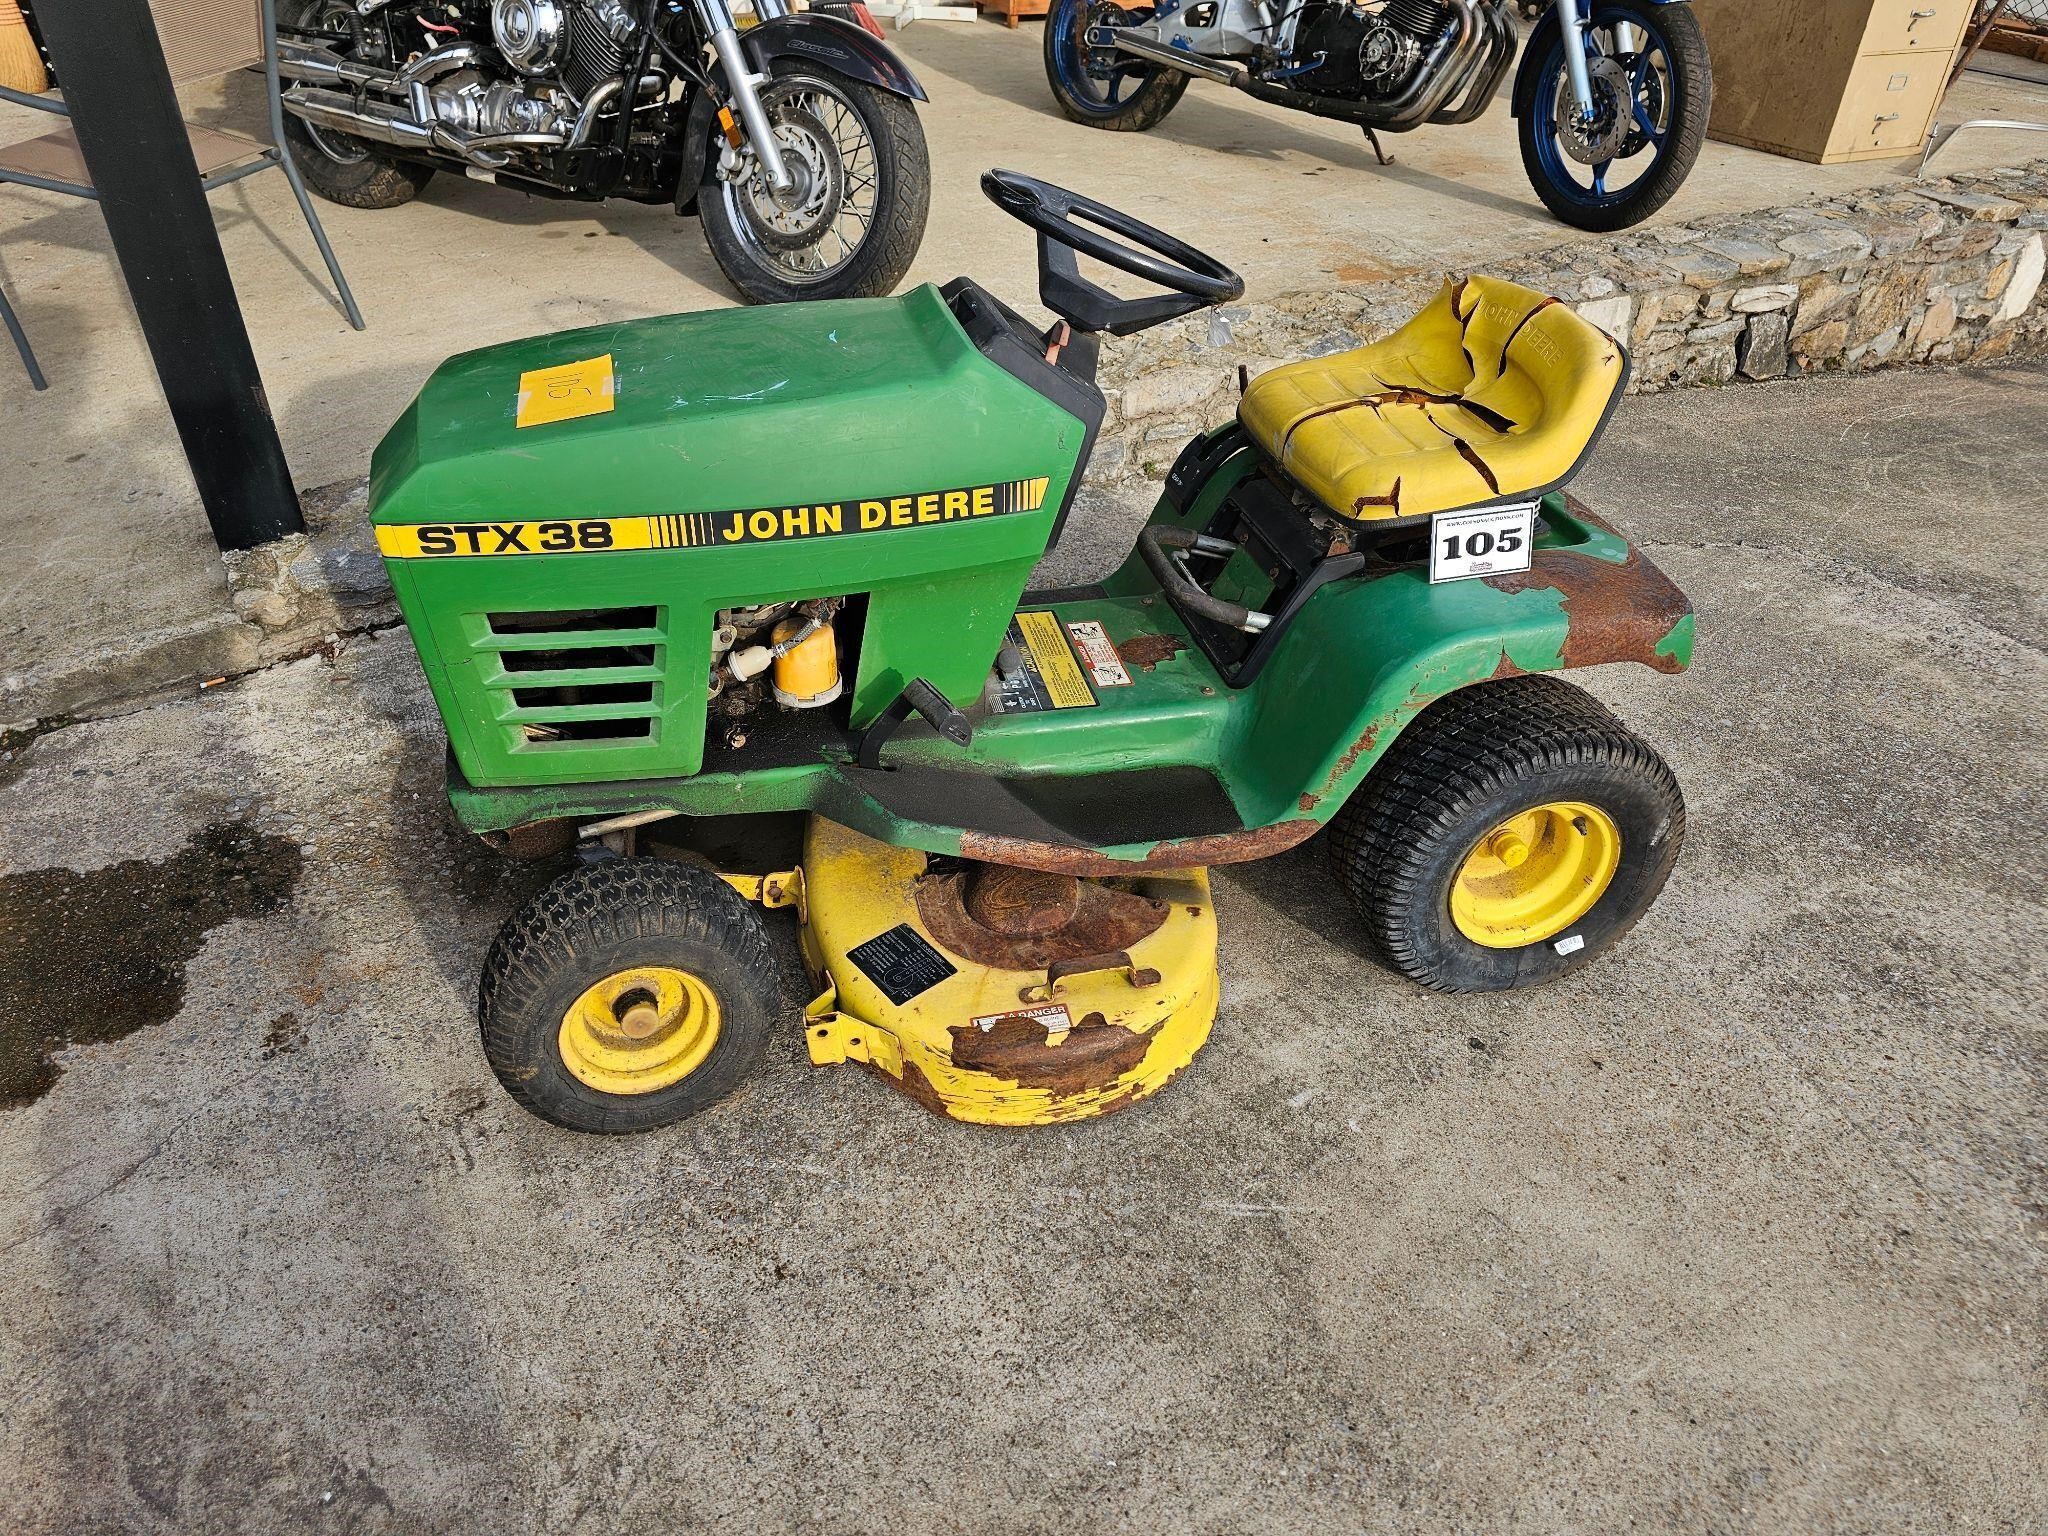 John Deer STX 38 Tractor - not running